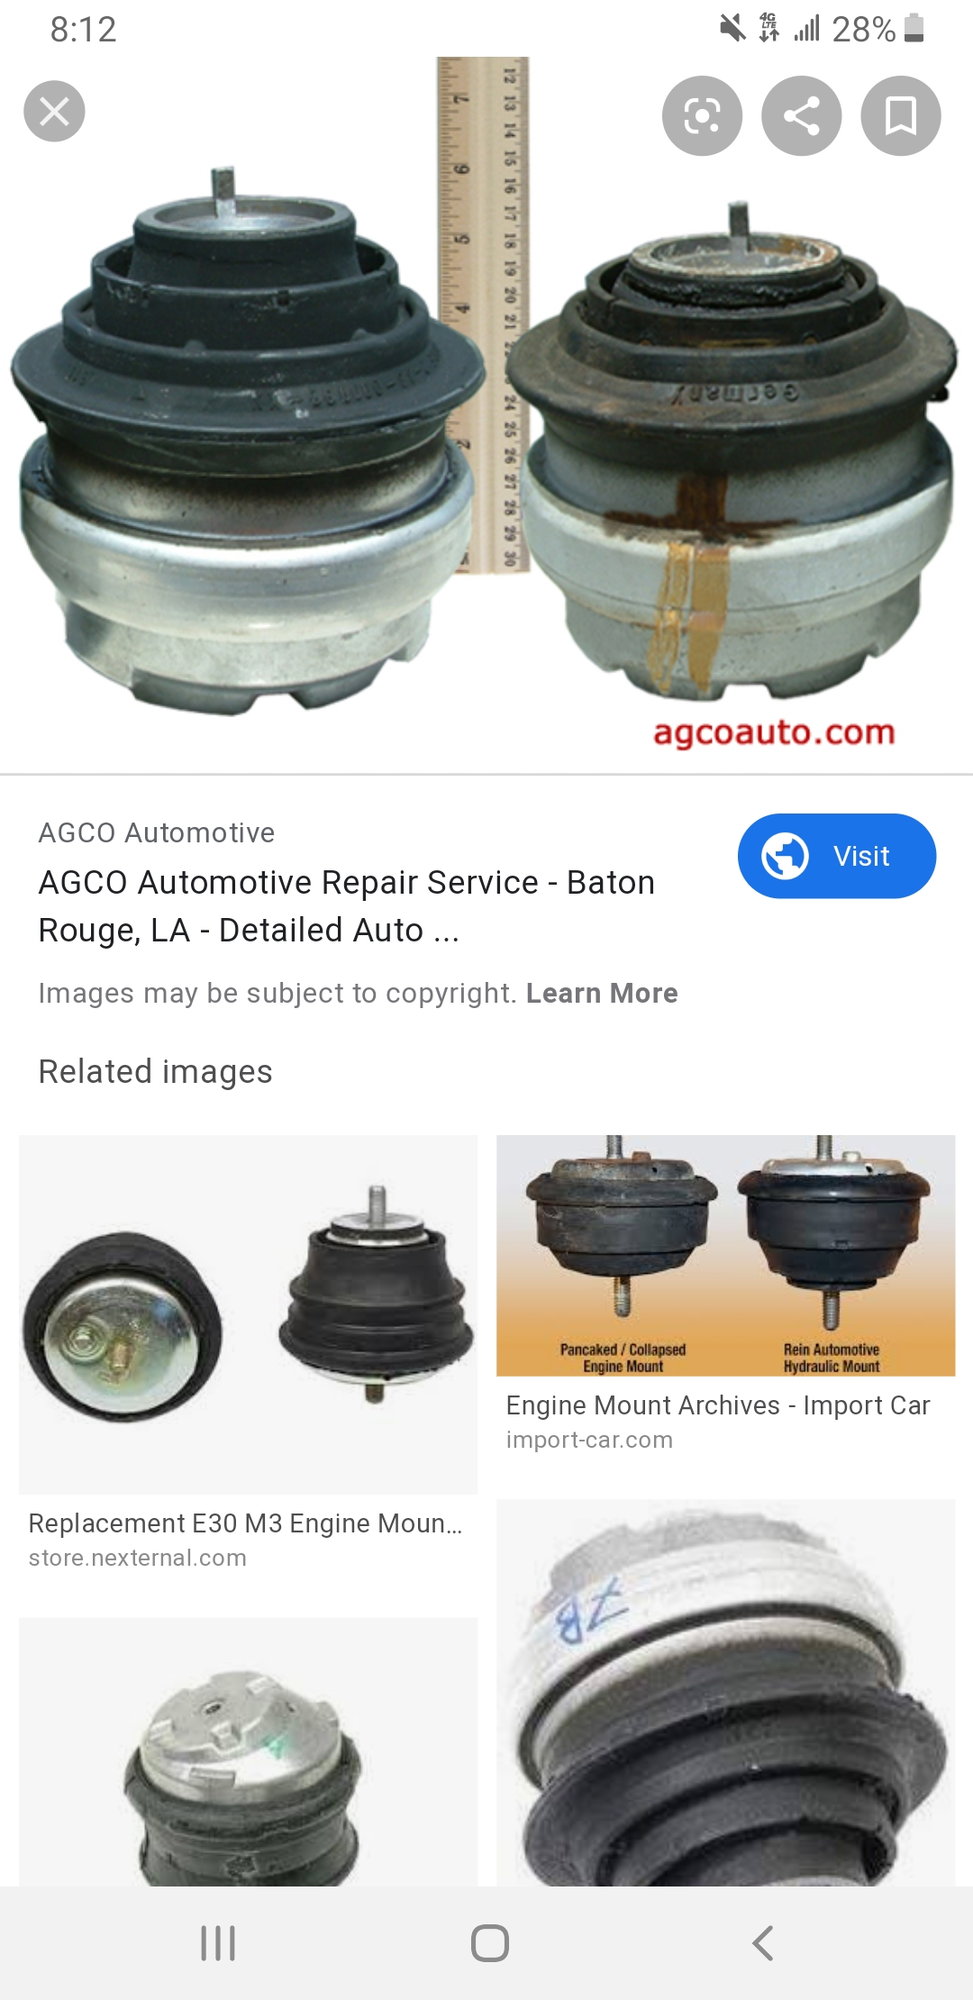 AGCO Automotive Repair Service - Baton Rouge, LA - Detailed Auto Topics -  What Causes Fuel Pumps to Fail